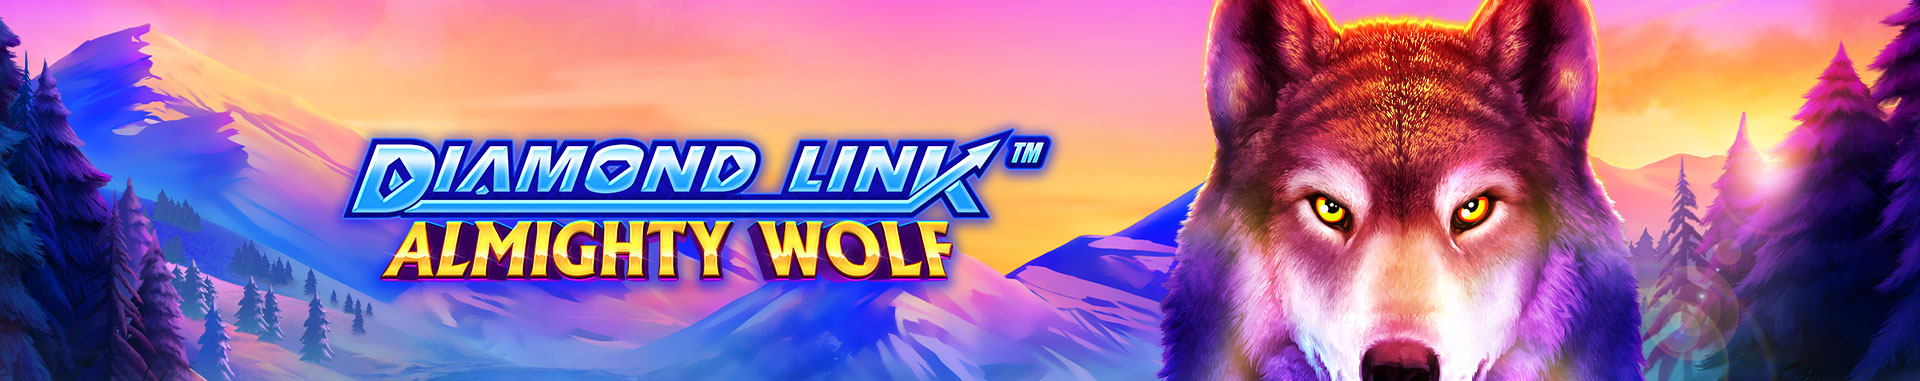 Tragaperras online Diamond Link™: Almighty Wolf